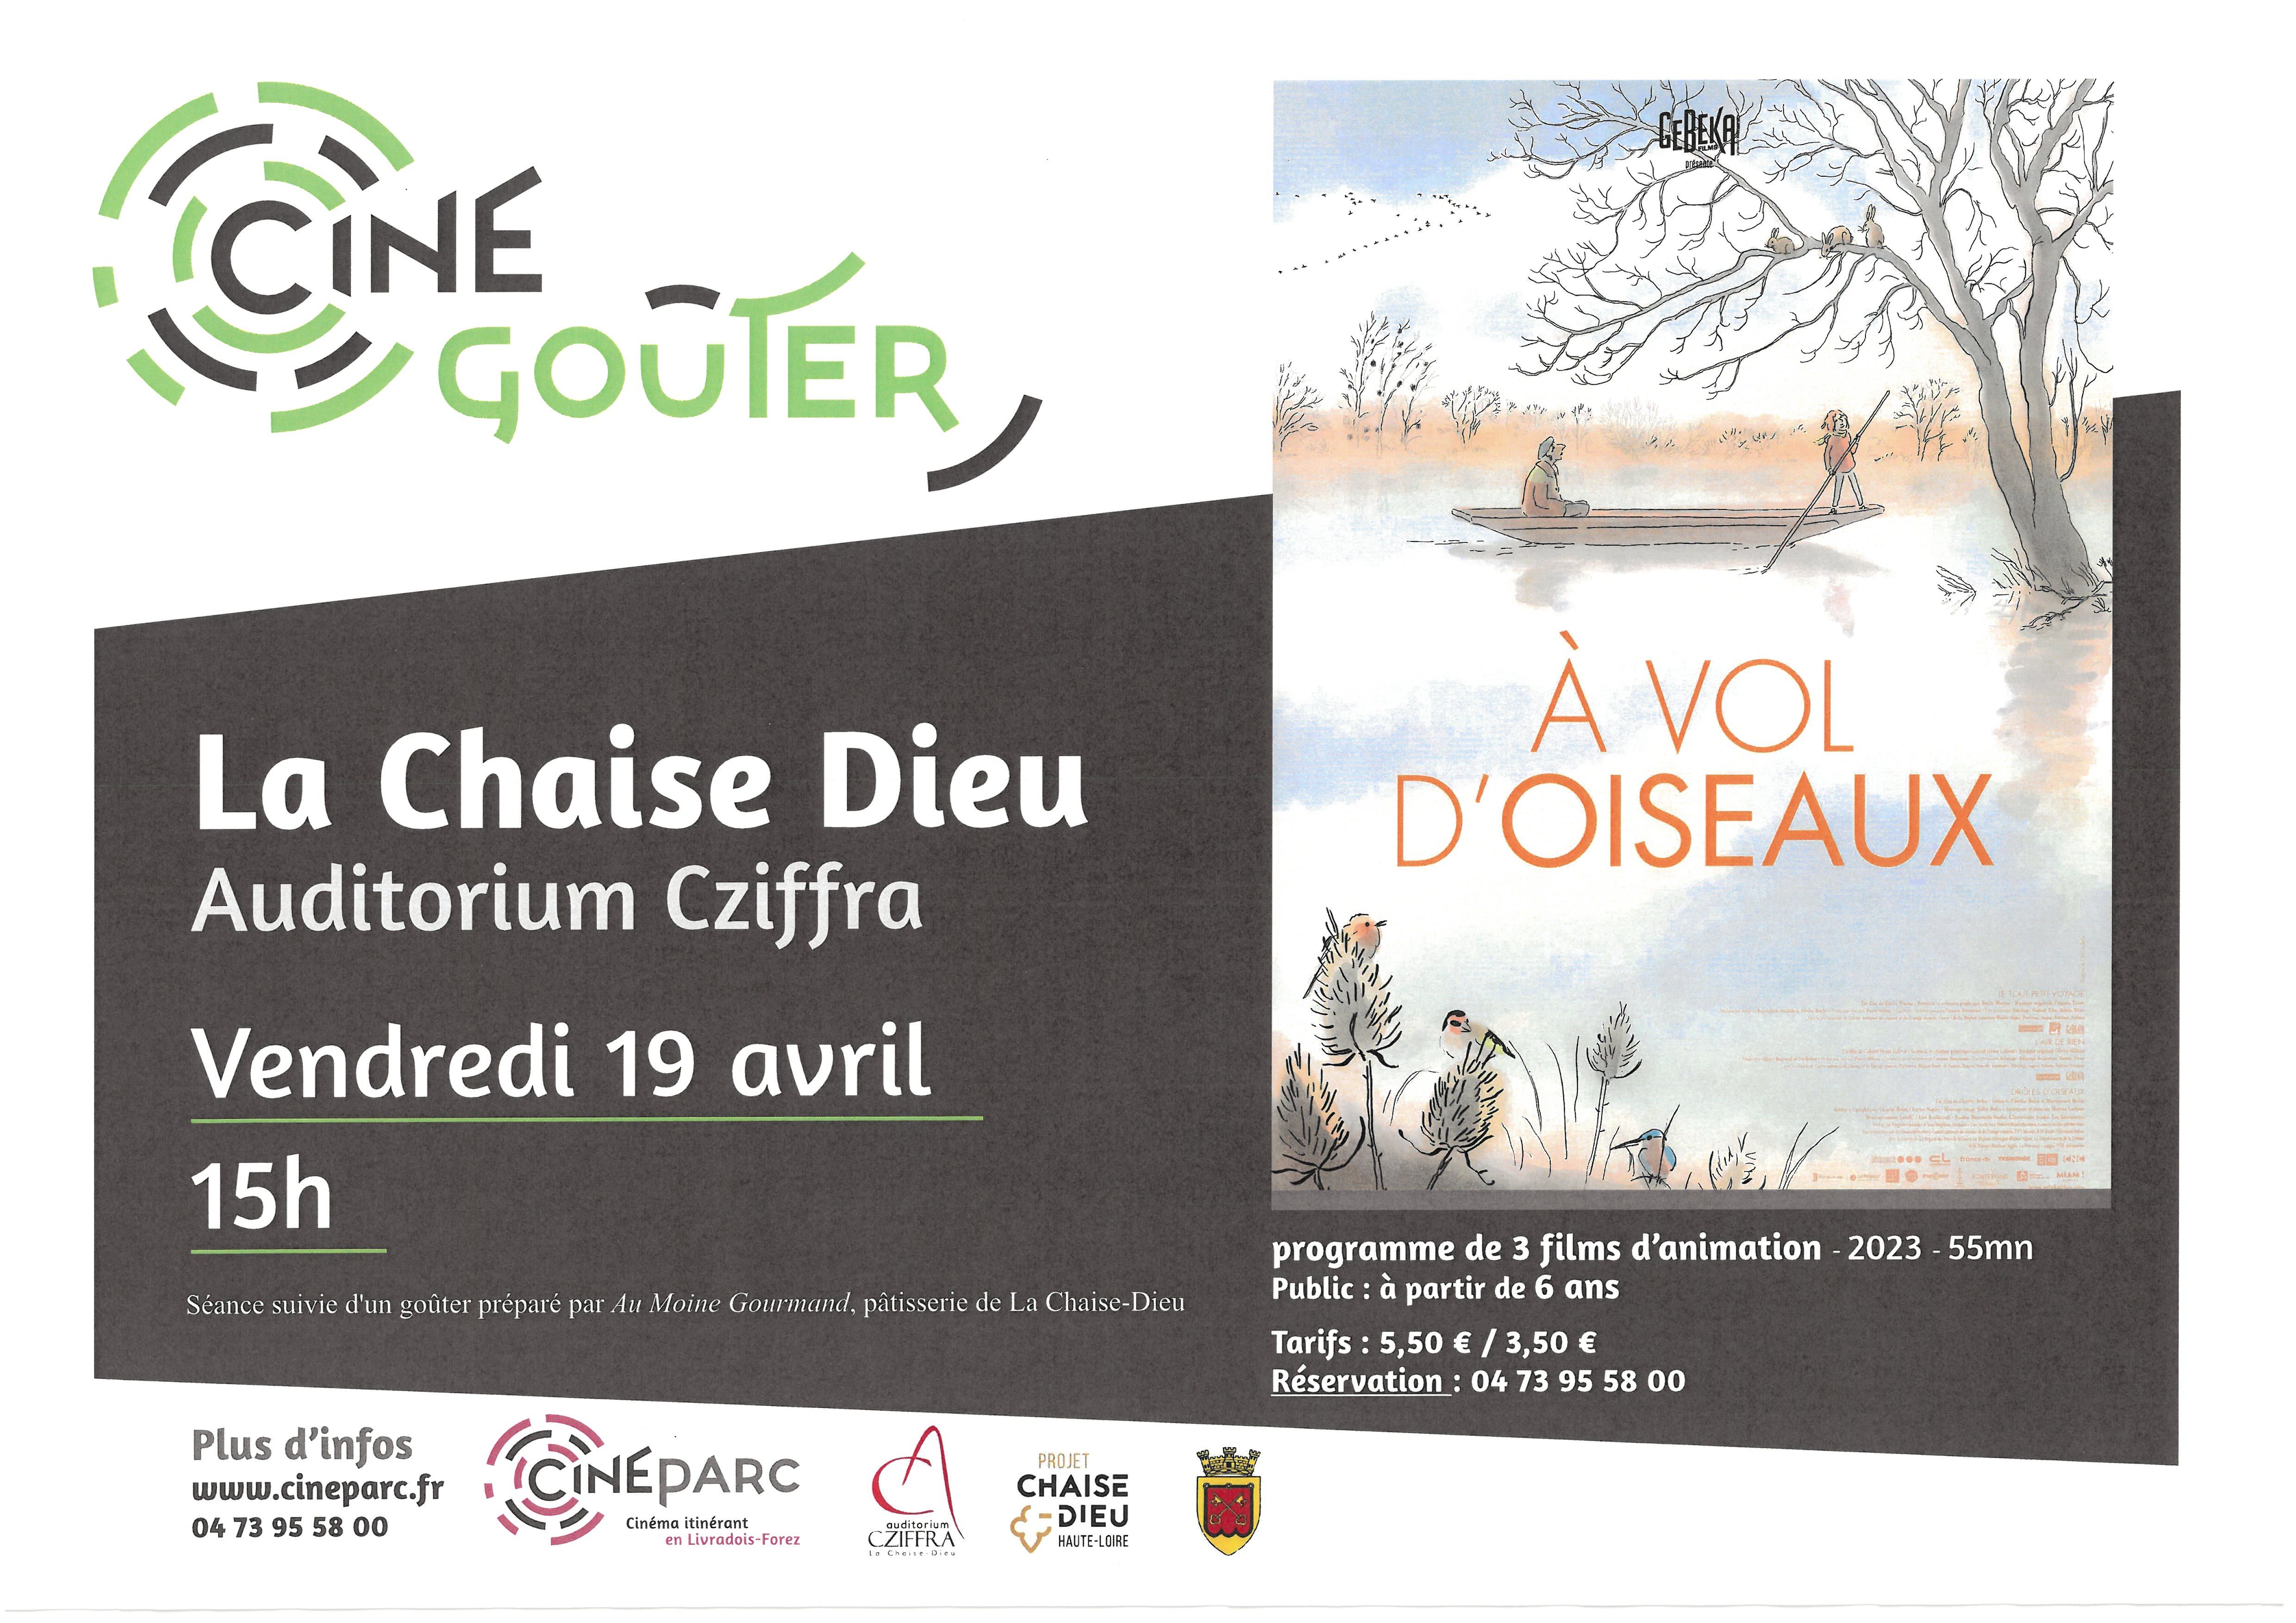 EVE-Ciné gouter-affiche